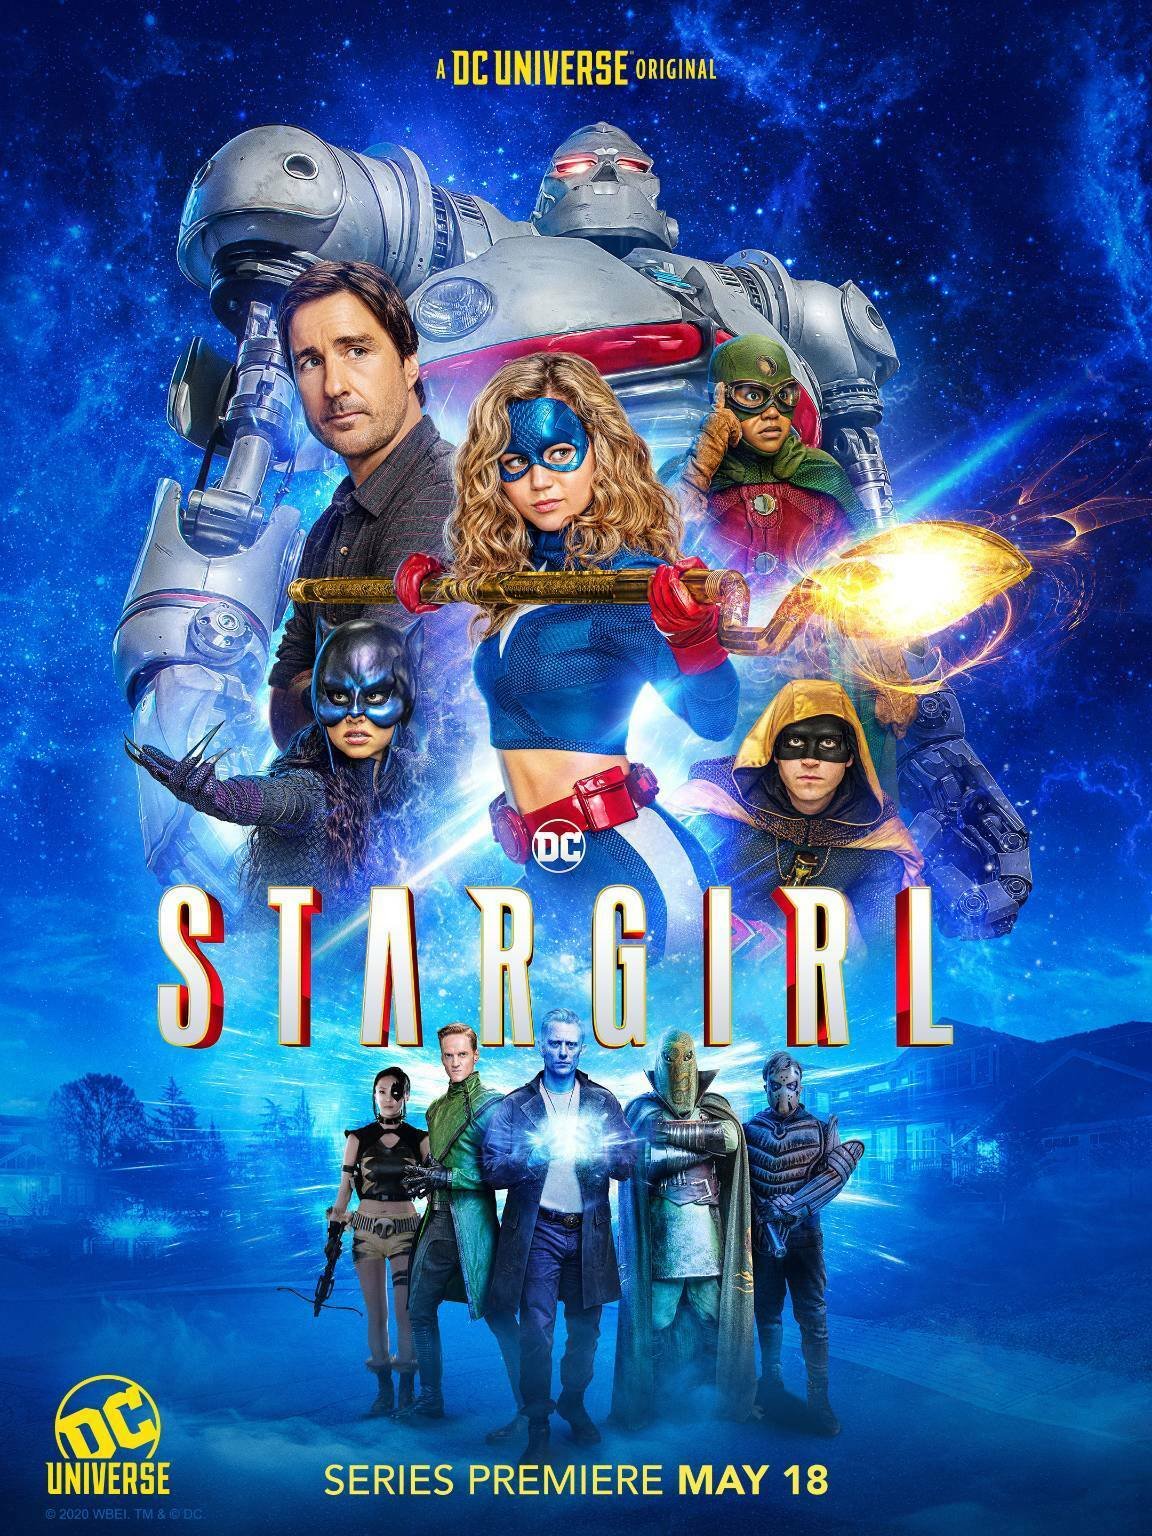 Stargirl circondata dai suoi amici della Justice Society of America e dai villain della Injustice Society